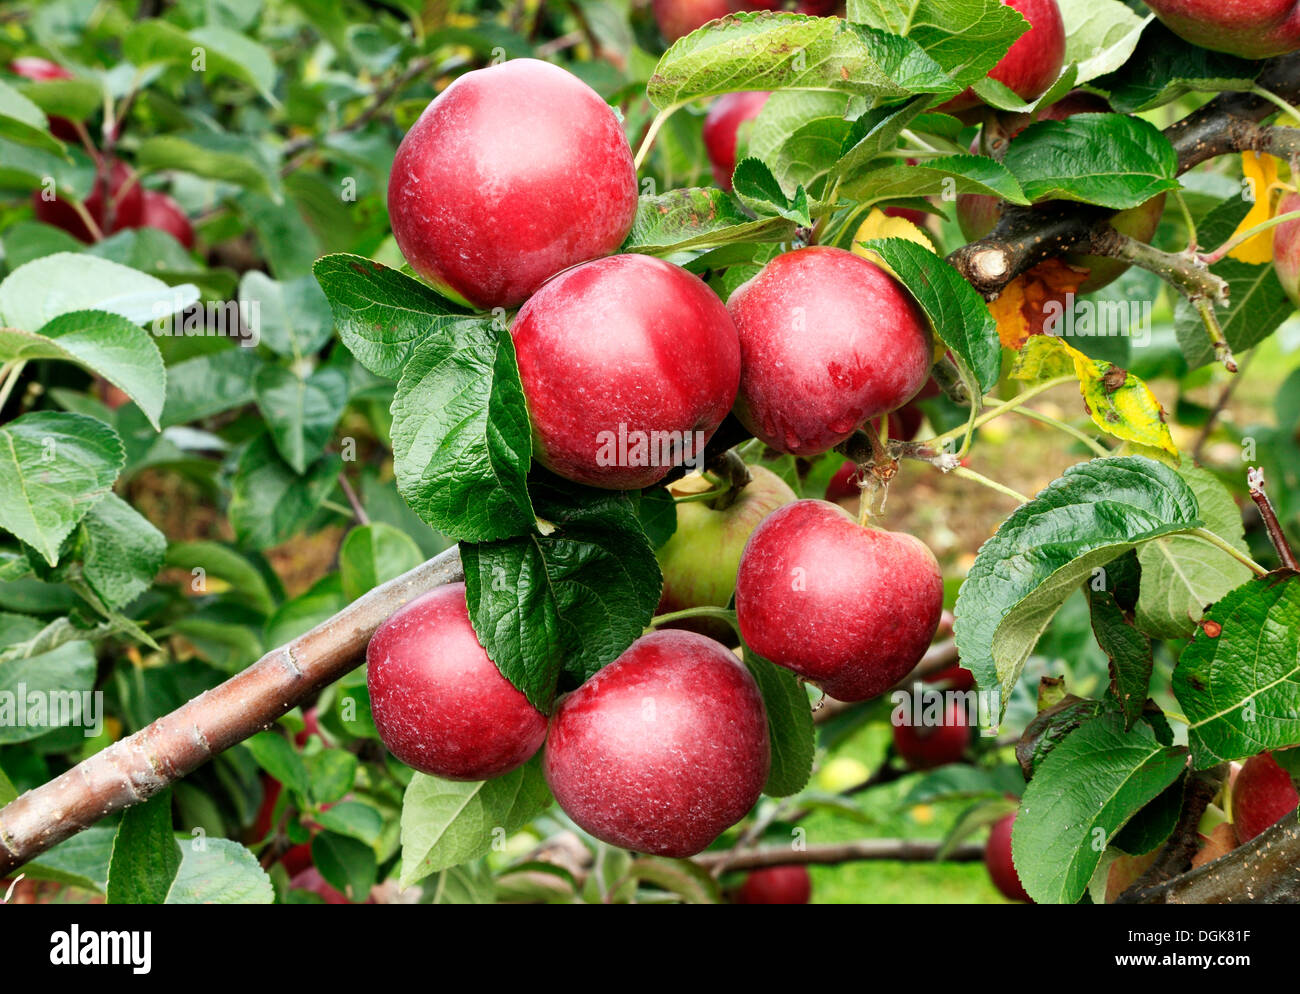 Apple 'Spartan', Malus domestica manzanas diversas variedades de árboles crecientes Foto de stock